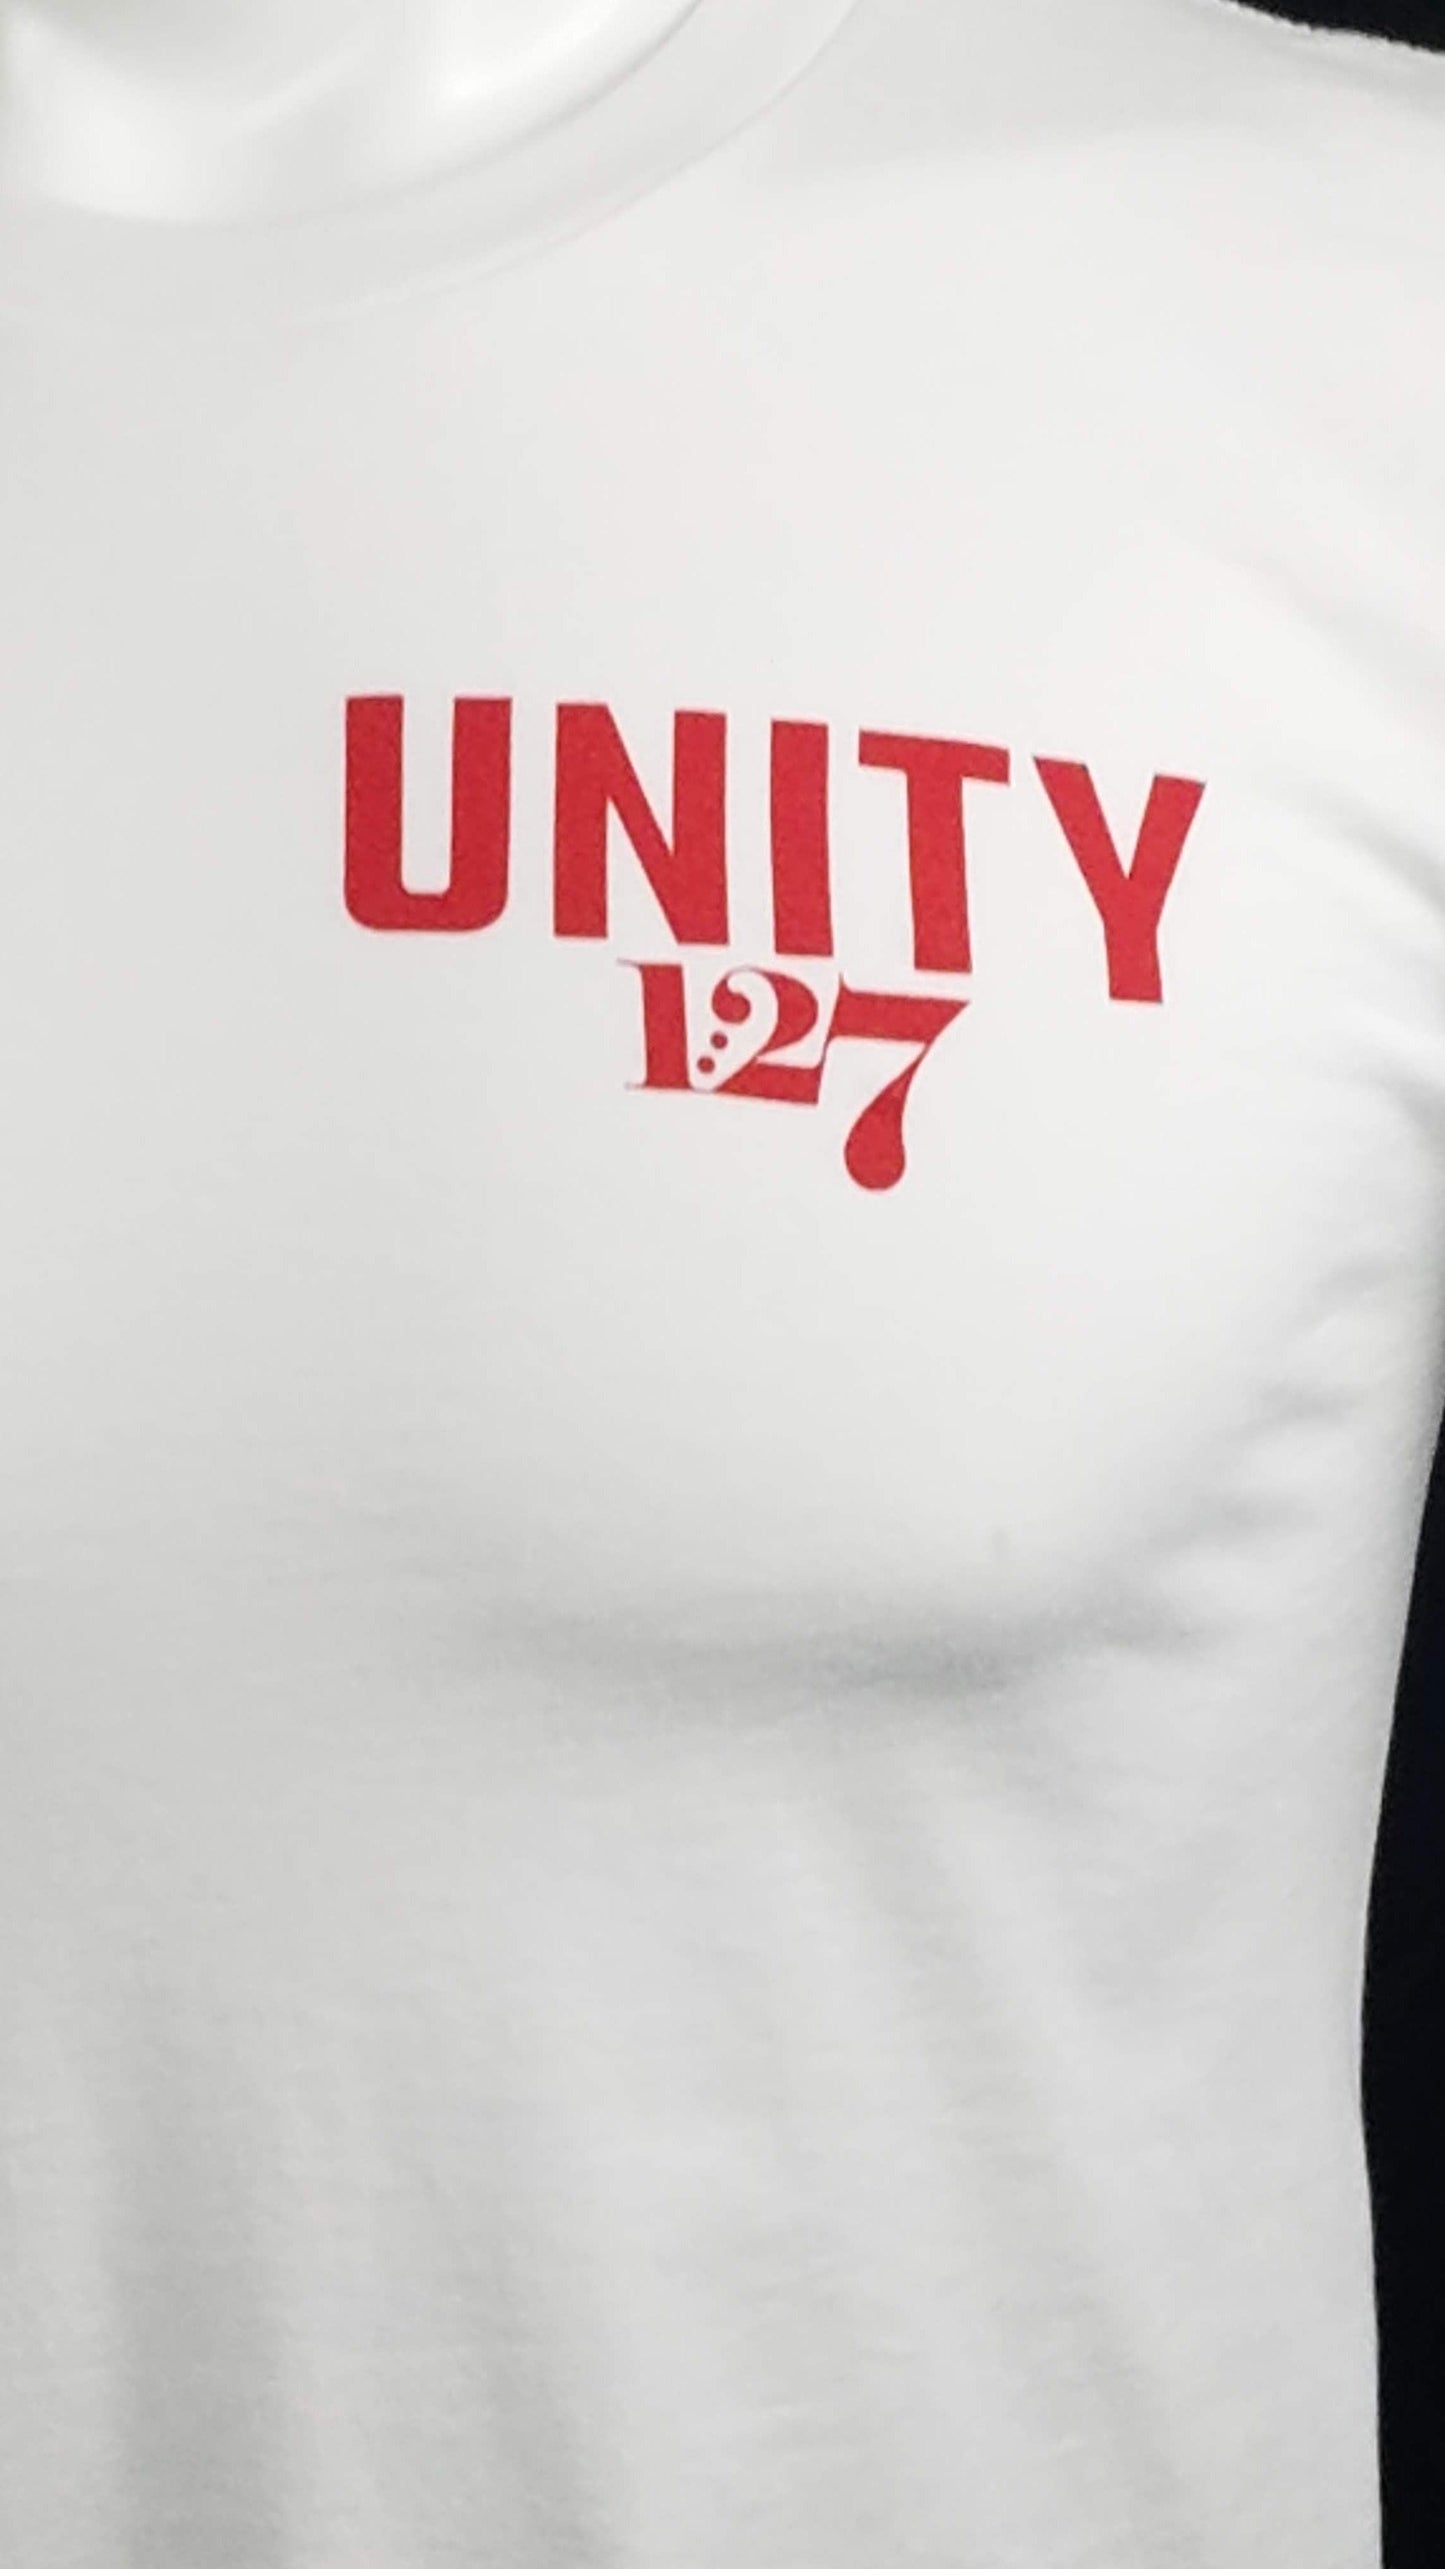 UNITY, 1:27 Clothing